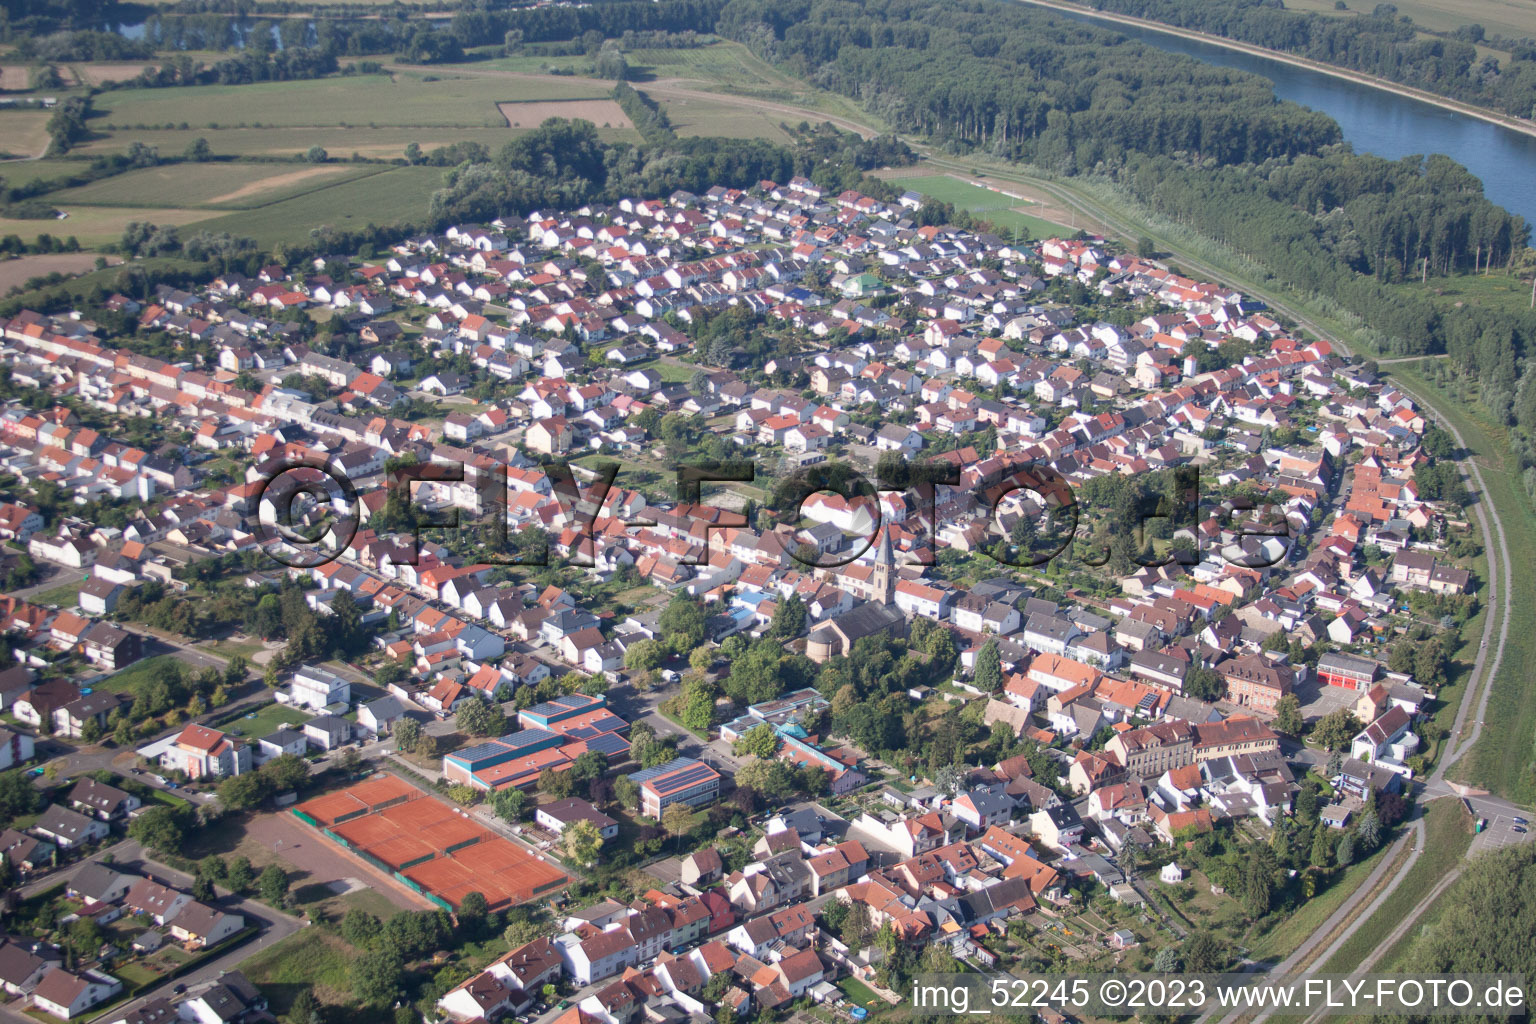 Quartier Rheinhausen in Oberhausen-Rheinhausen dans le département Bade-Wurtemberg, Allemagne hors des airs